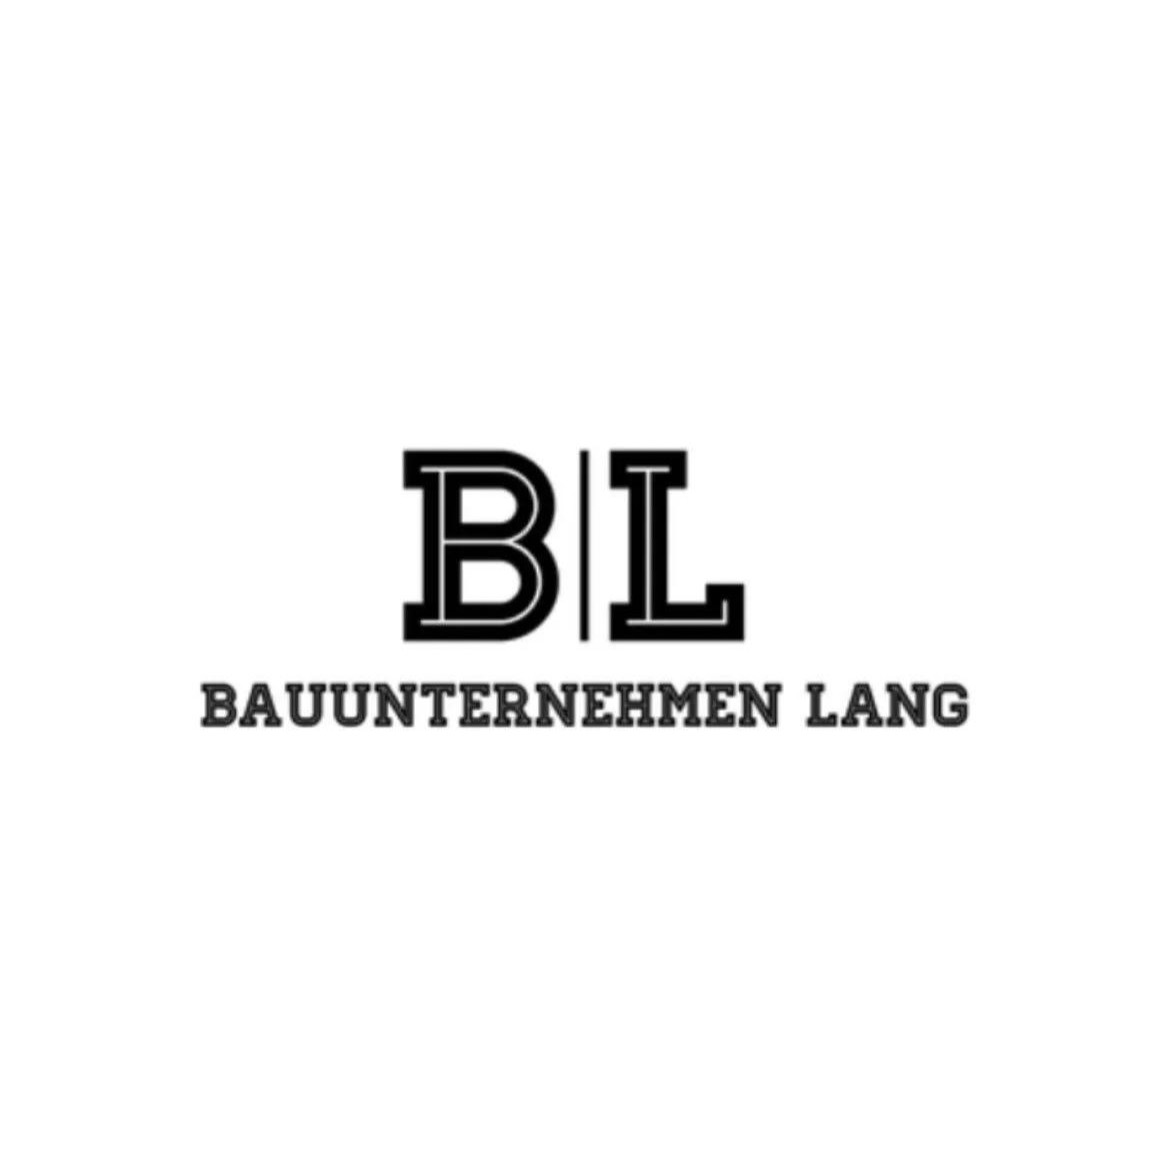 Bauunternehmen Lang in Wuppertal - Logo